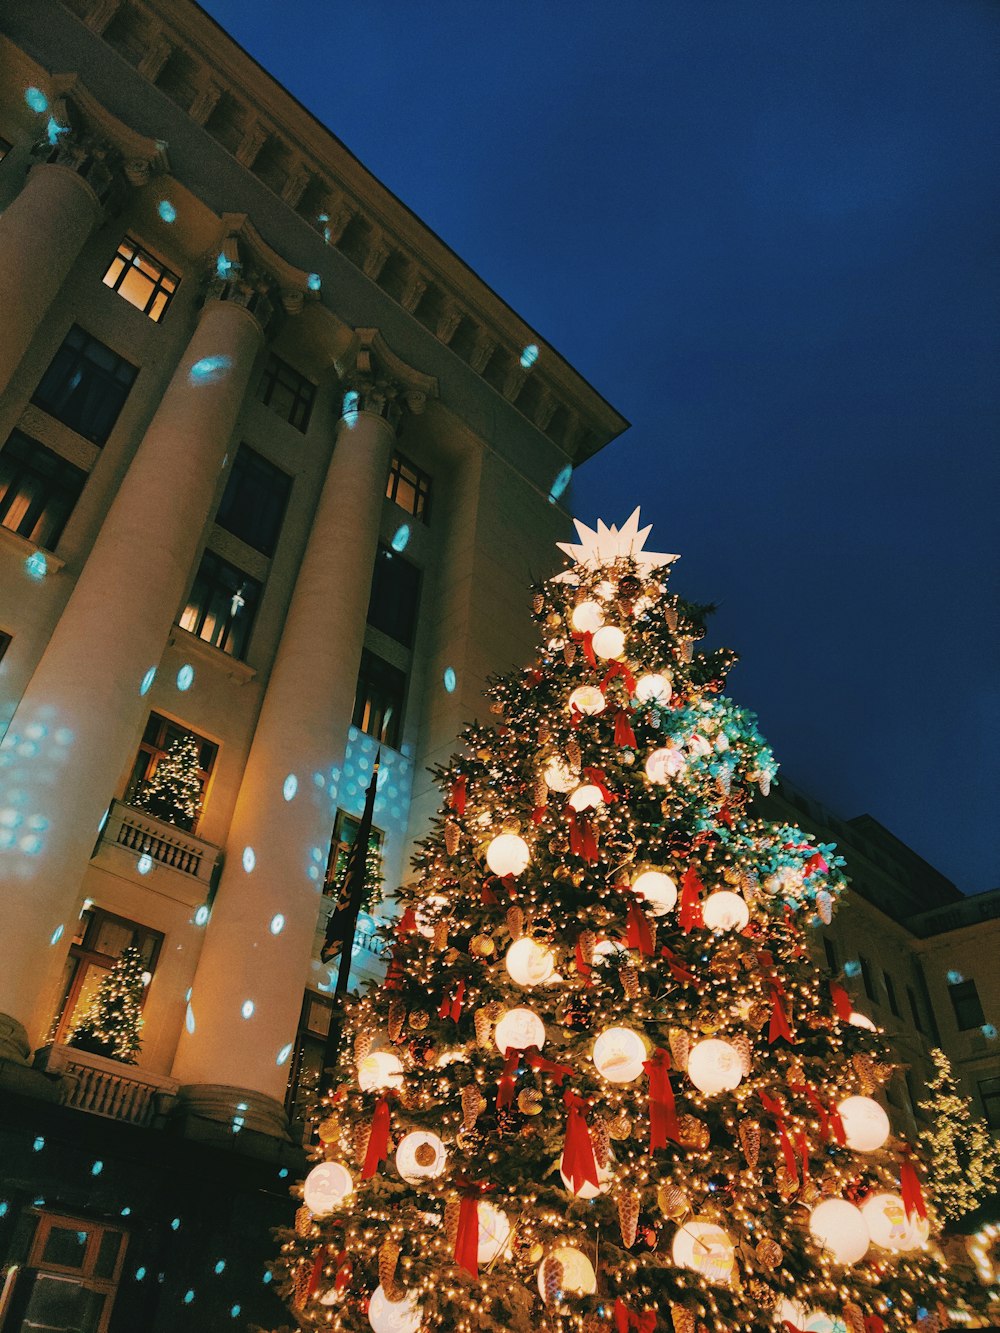 Albero di Natale con luci a stringa vicino all'edificio in cemento marrone durante la notte